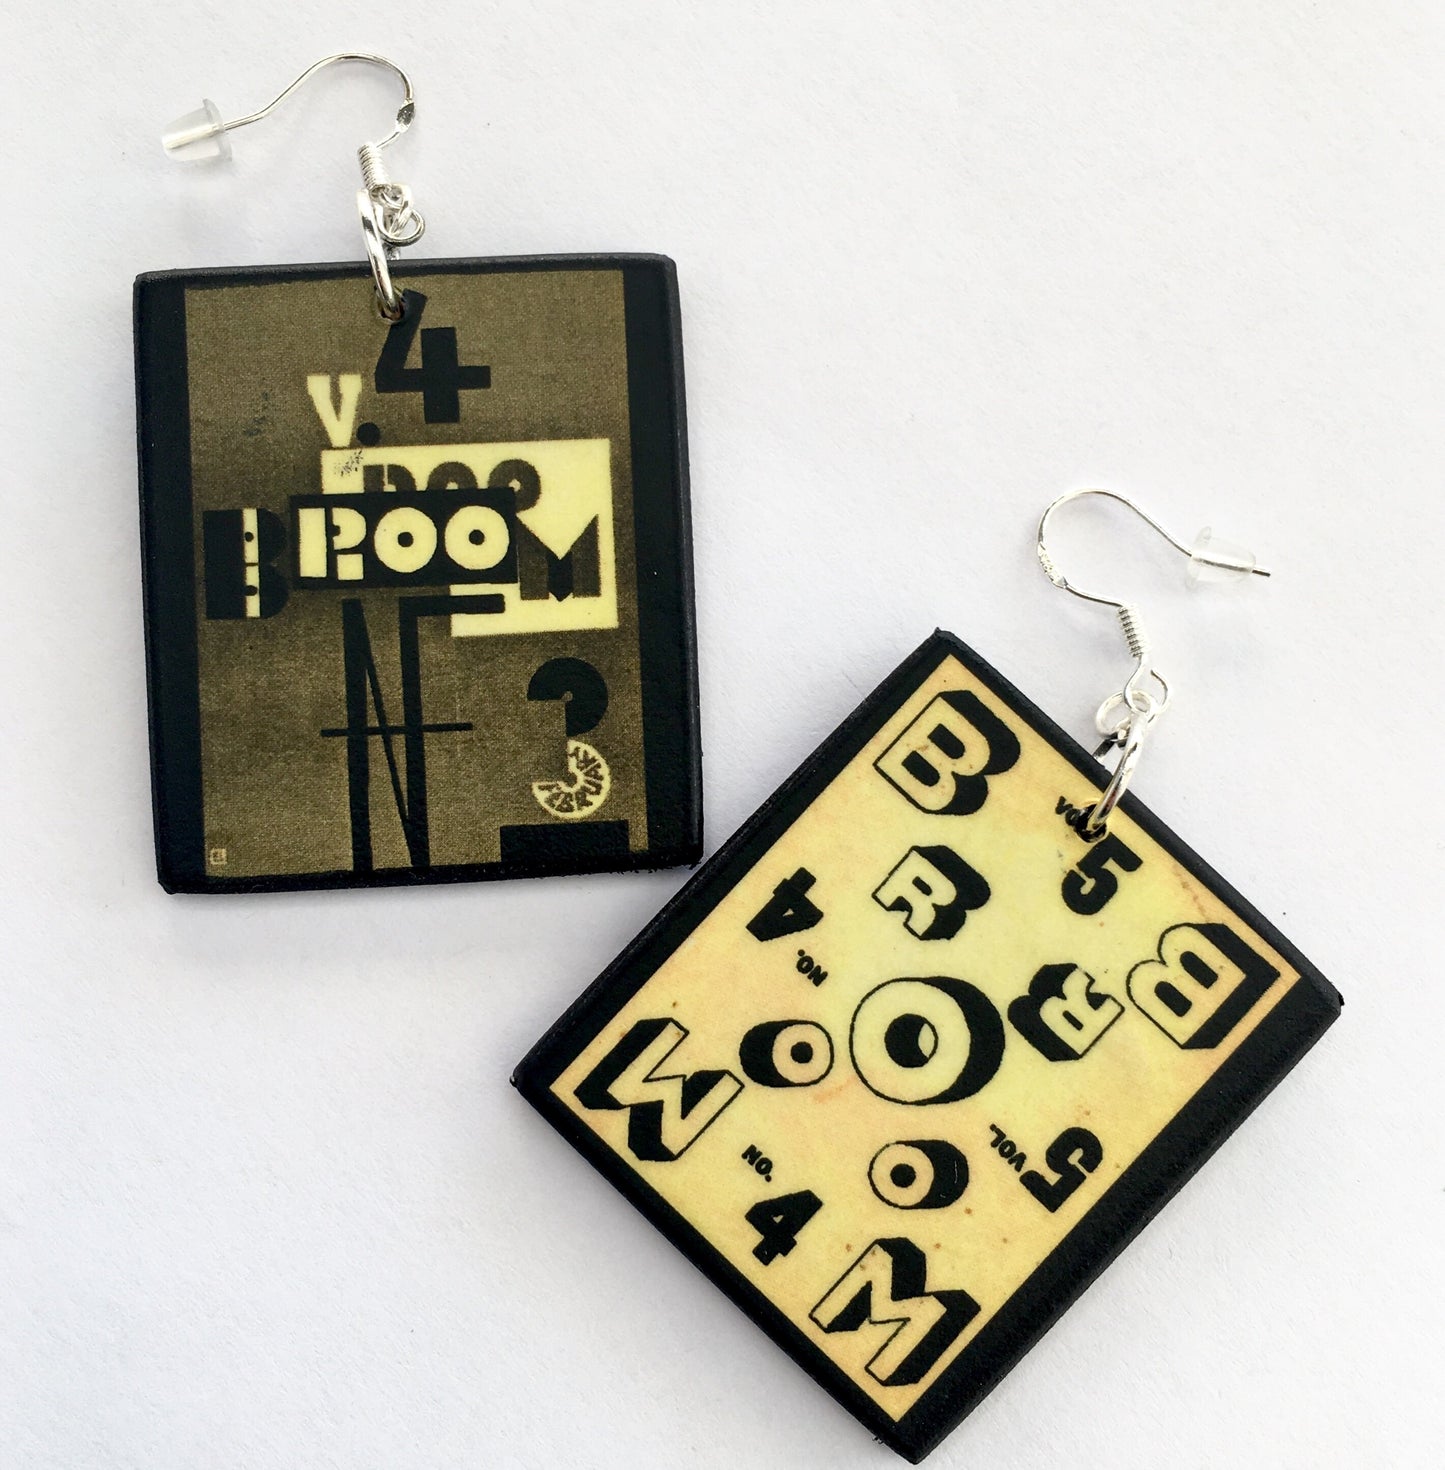 El Lissitzky, BROOM magazine art earrings.